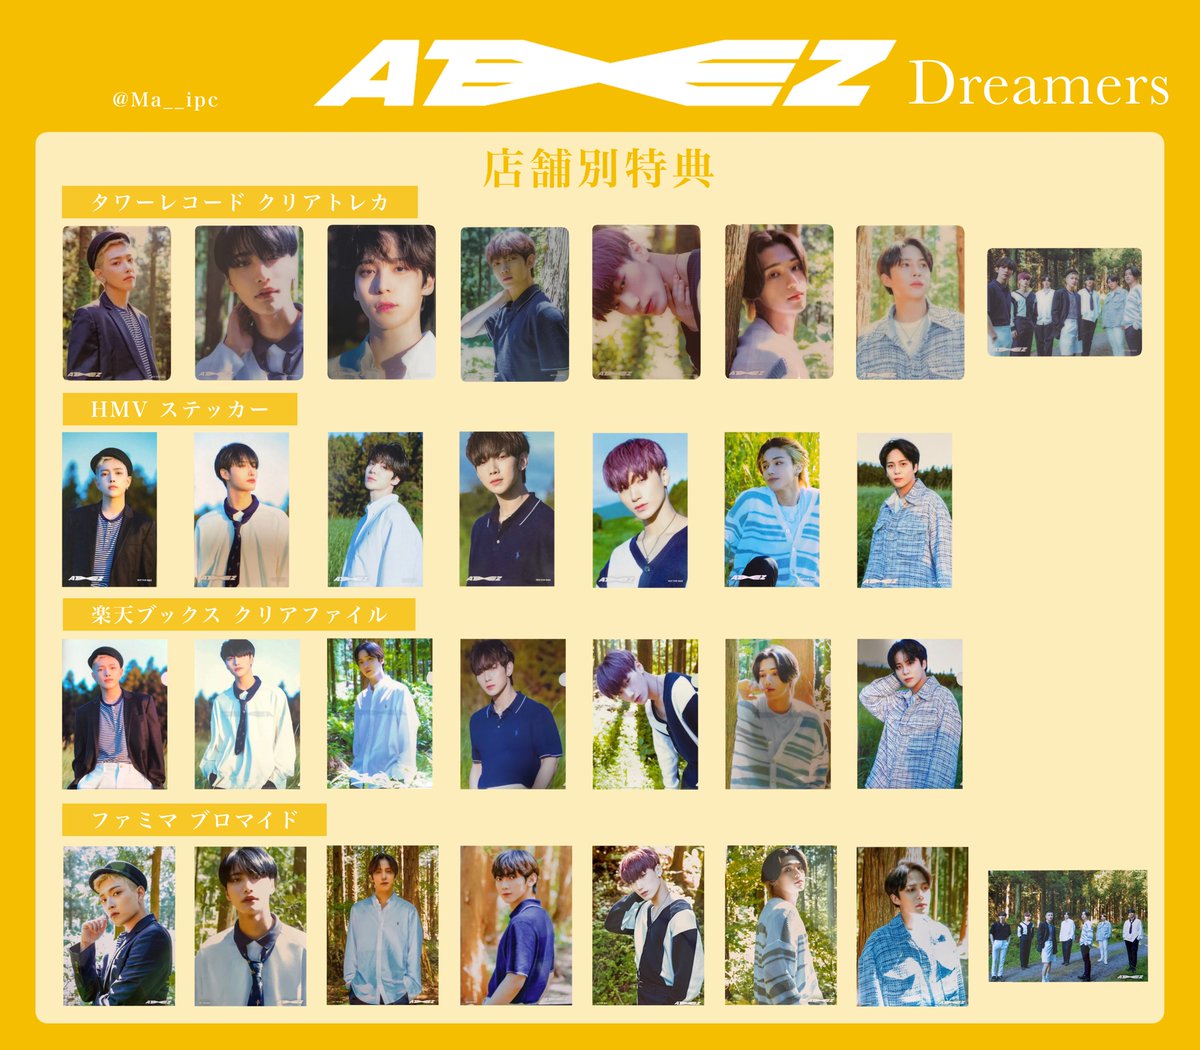 日本初の ATEEZ dreamers サン トレカ rahathomedesign.com